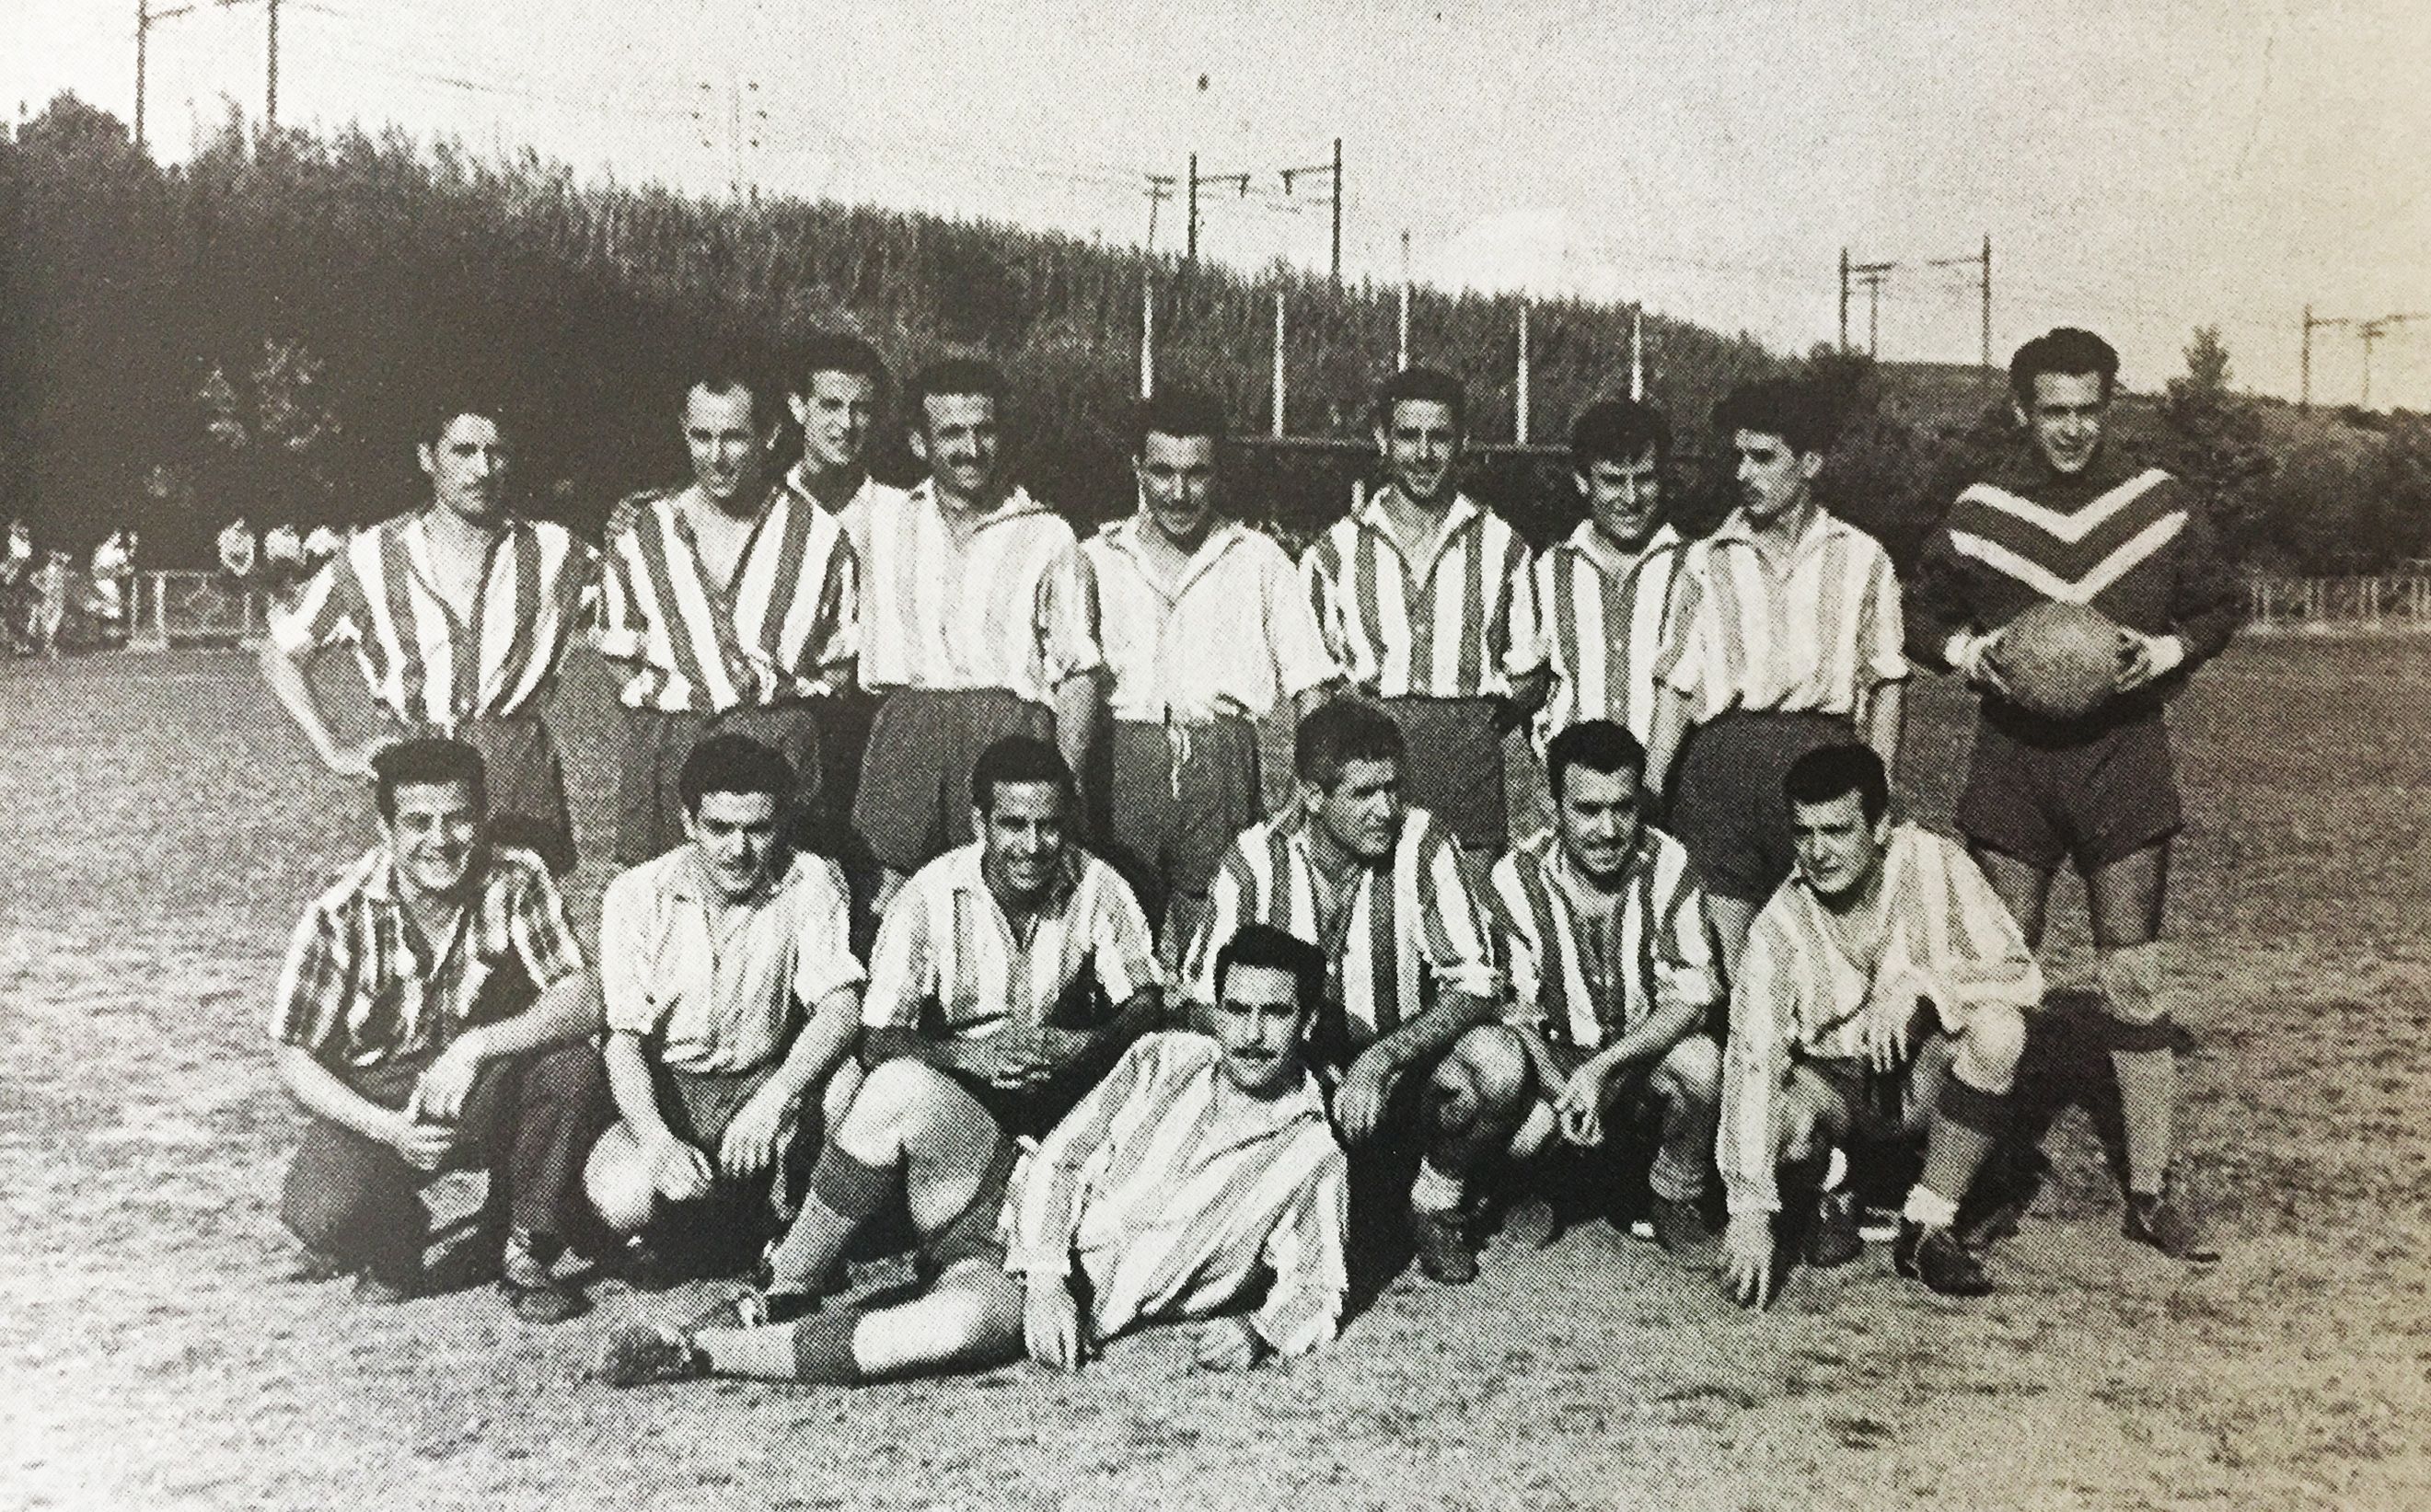 Equip de Futbol de Cerdanyola, als anys 50, al camp d'Adan i Eva. Escursell. Cedida per Família Prieto